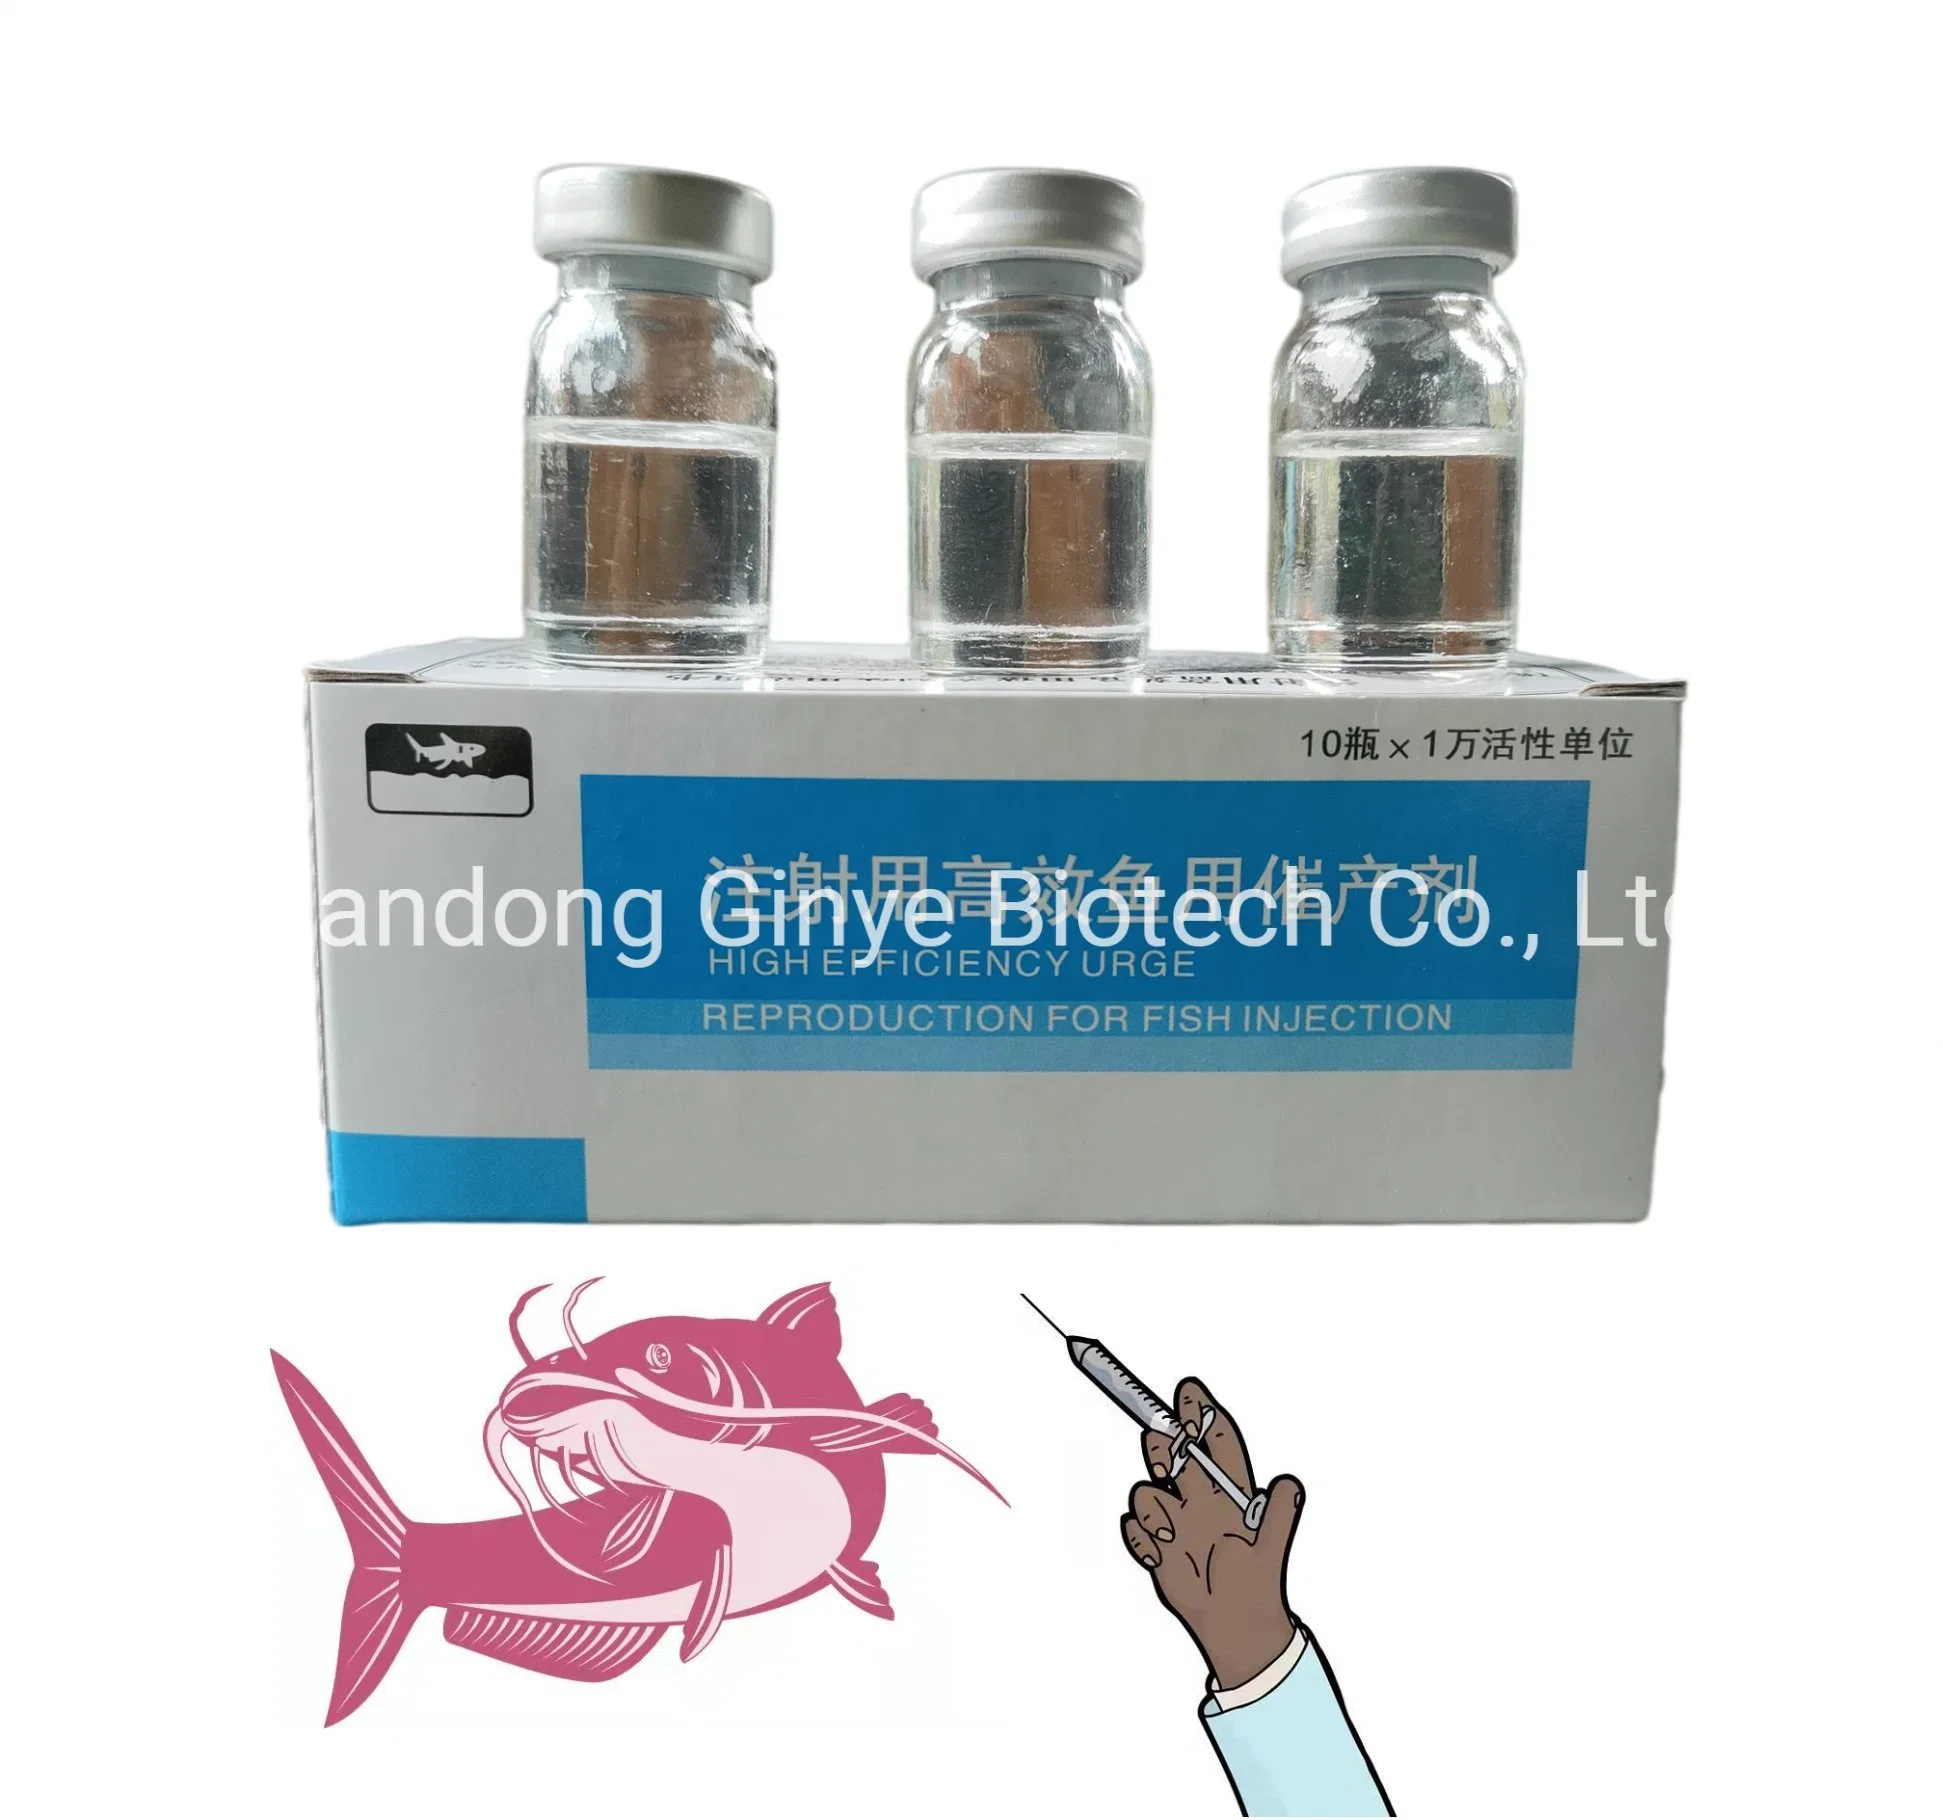 HCG Gonadotrophin coriónica de hormona de la producción de peces Ovaprim Ovulin